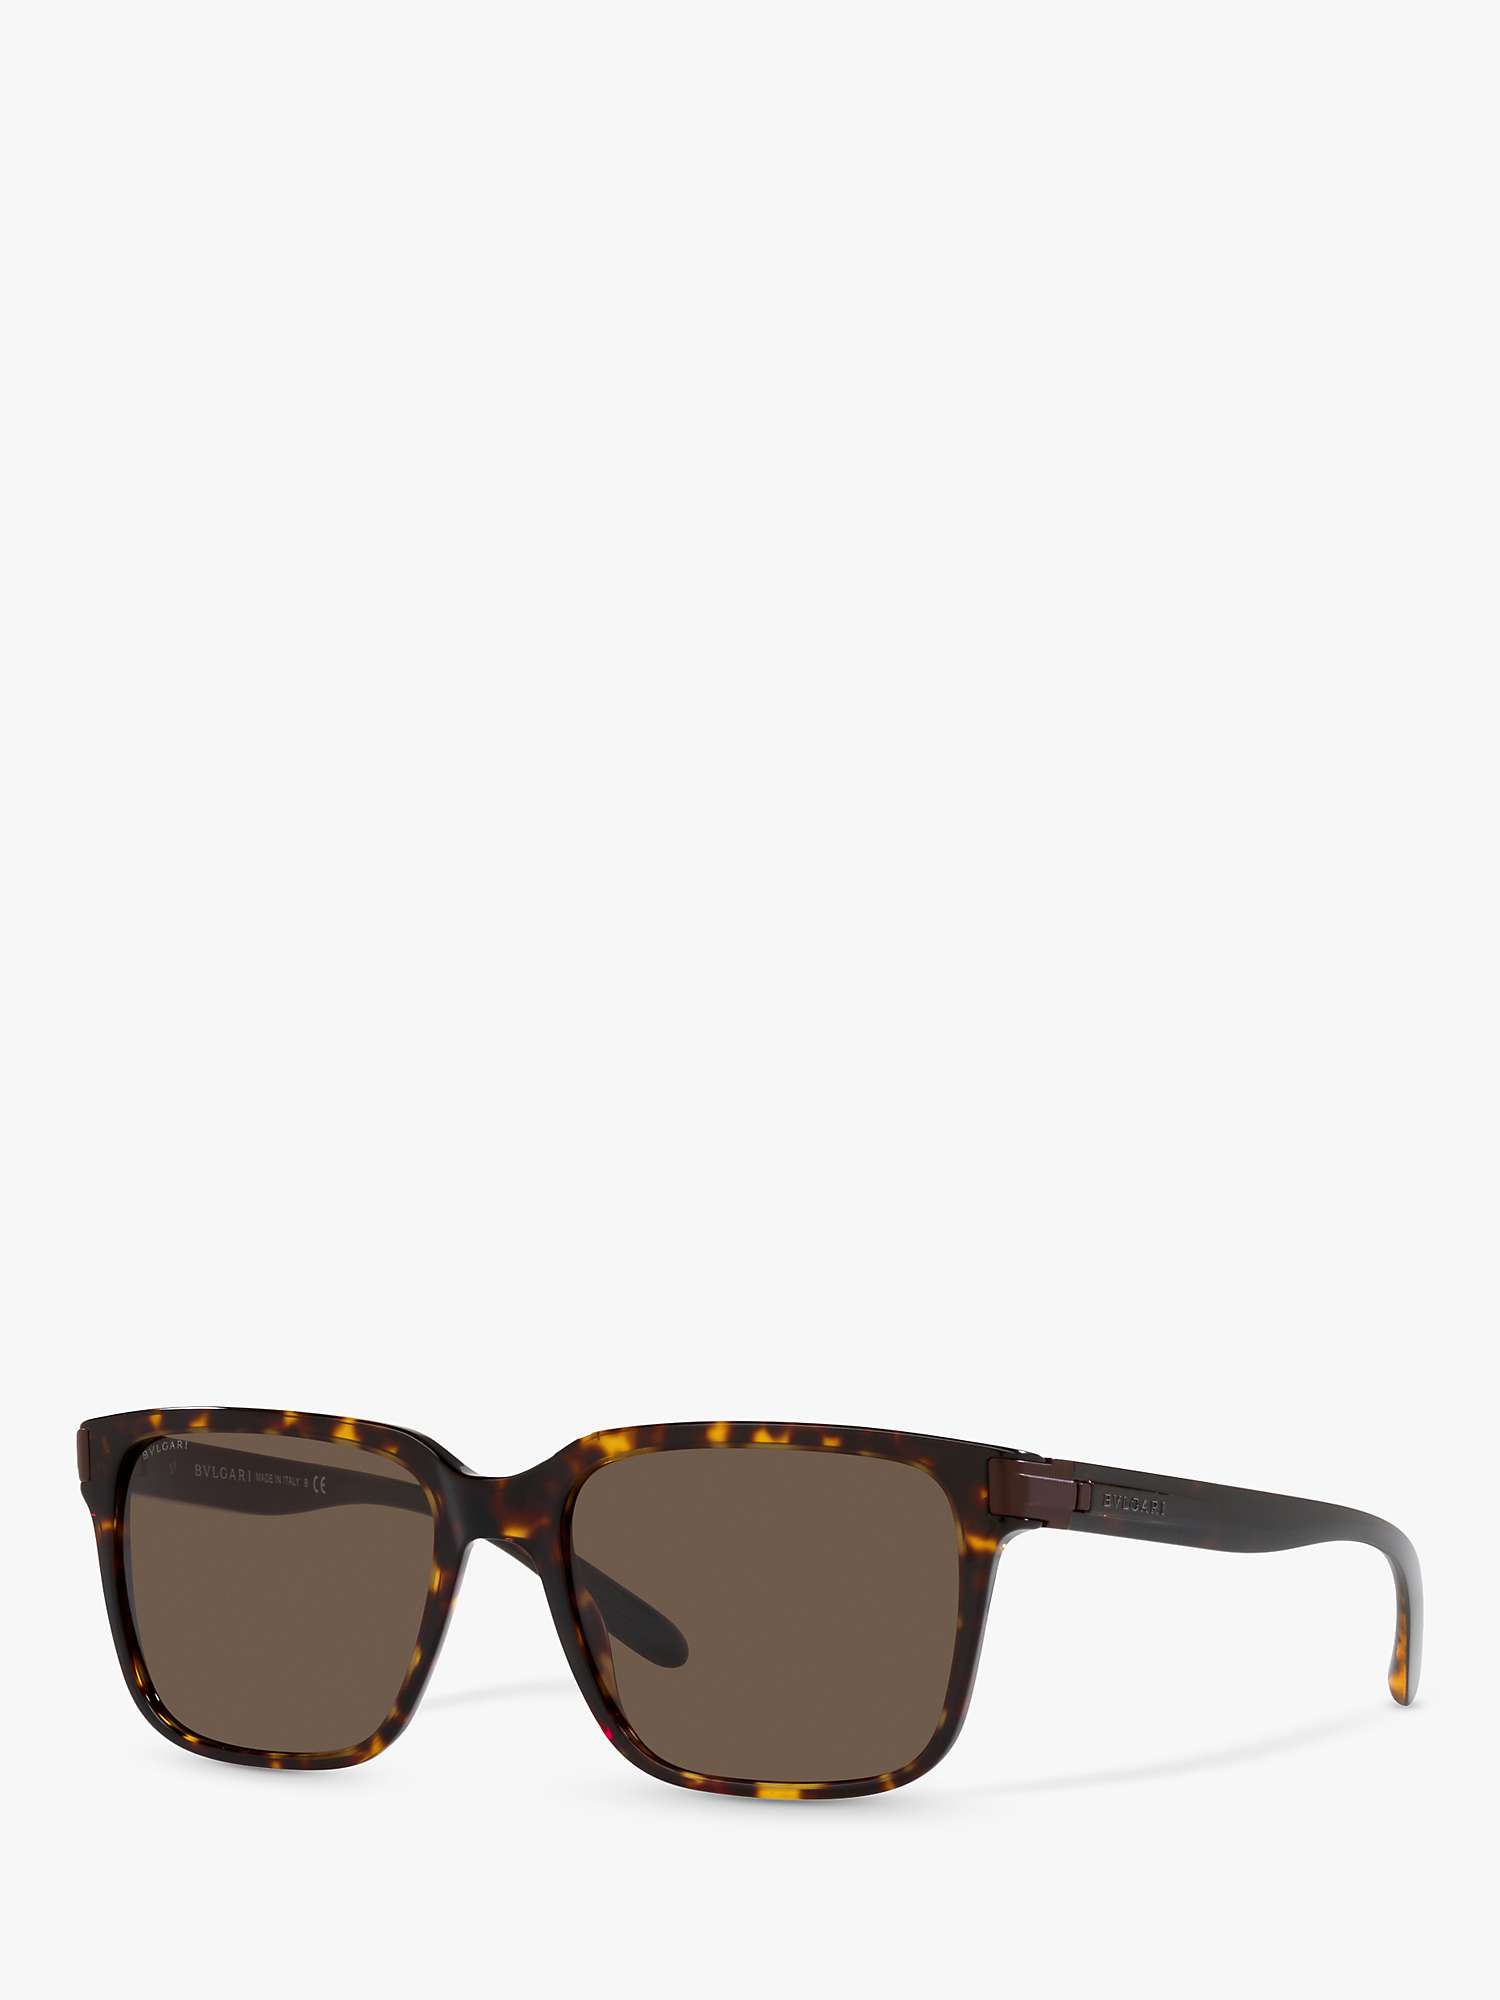 Buy BVLGARI BV7036 Men's Rectangular Sunglasses, Havana/Brown Online at johnlewis.com